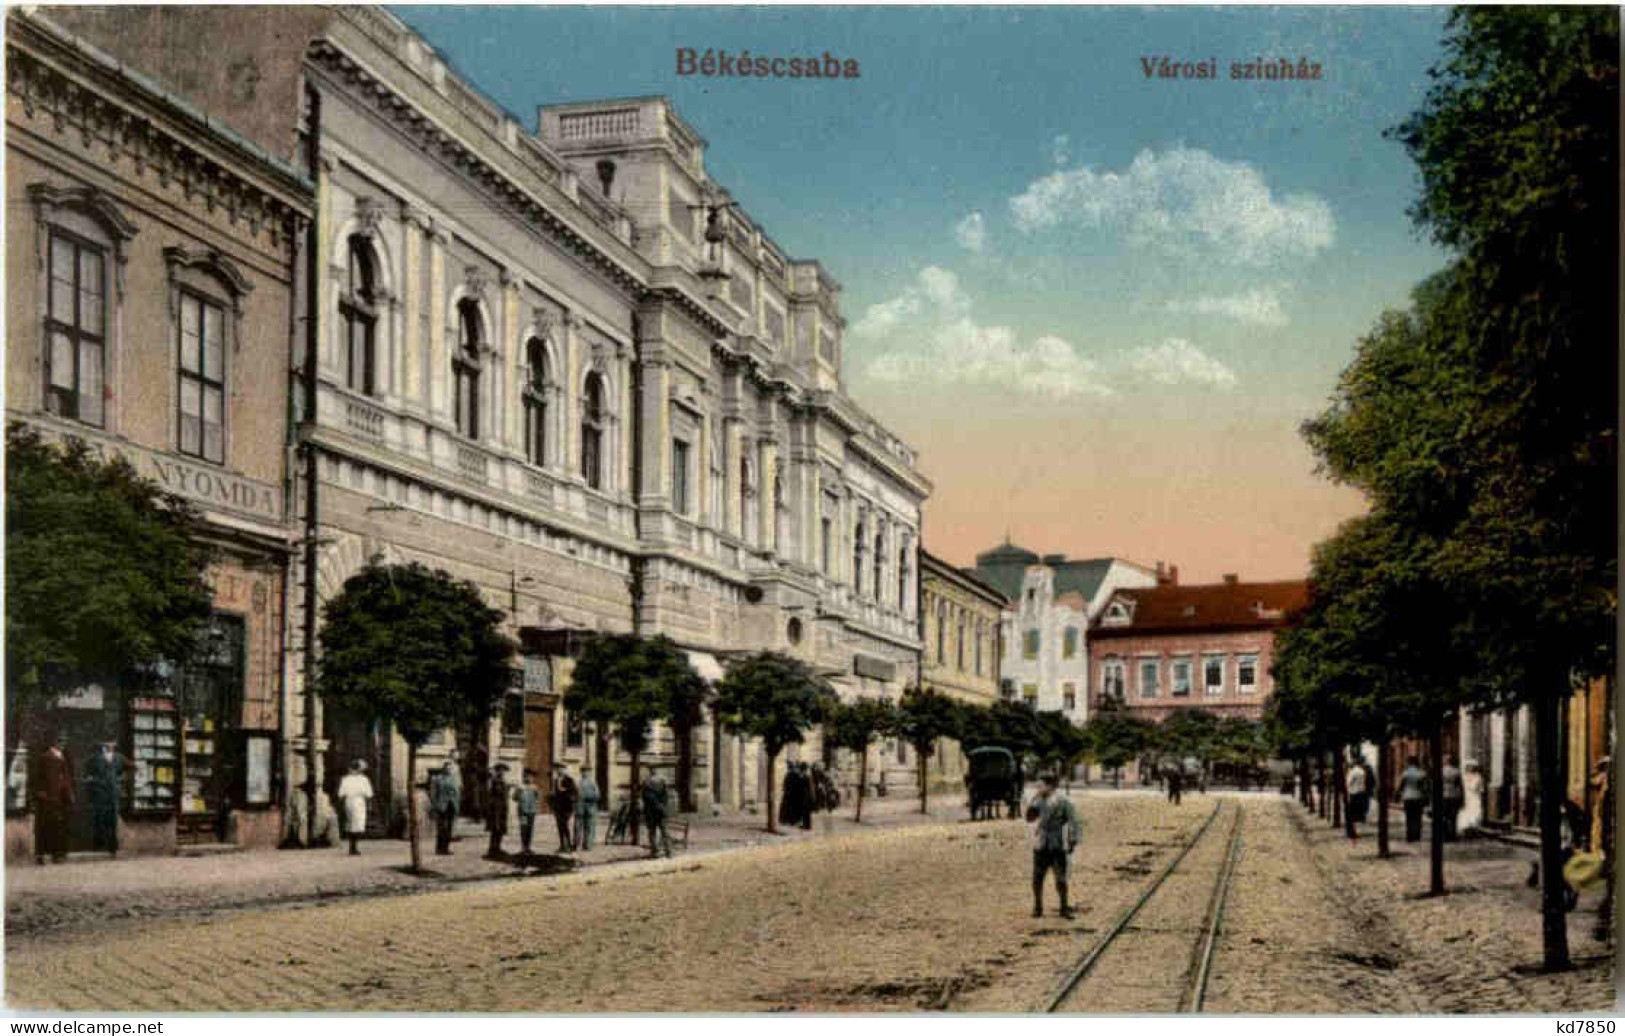 Bekecsaba - Varosi Szinhaz - Hungary